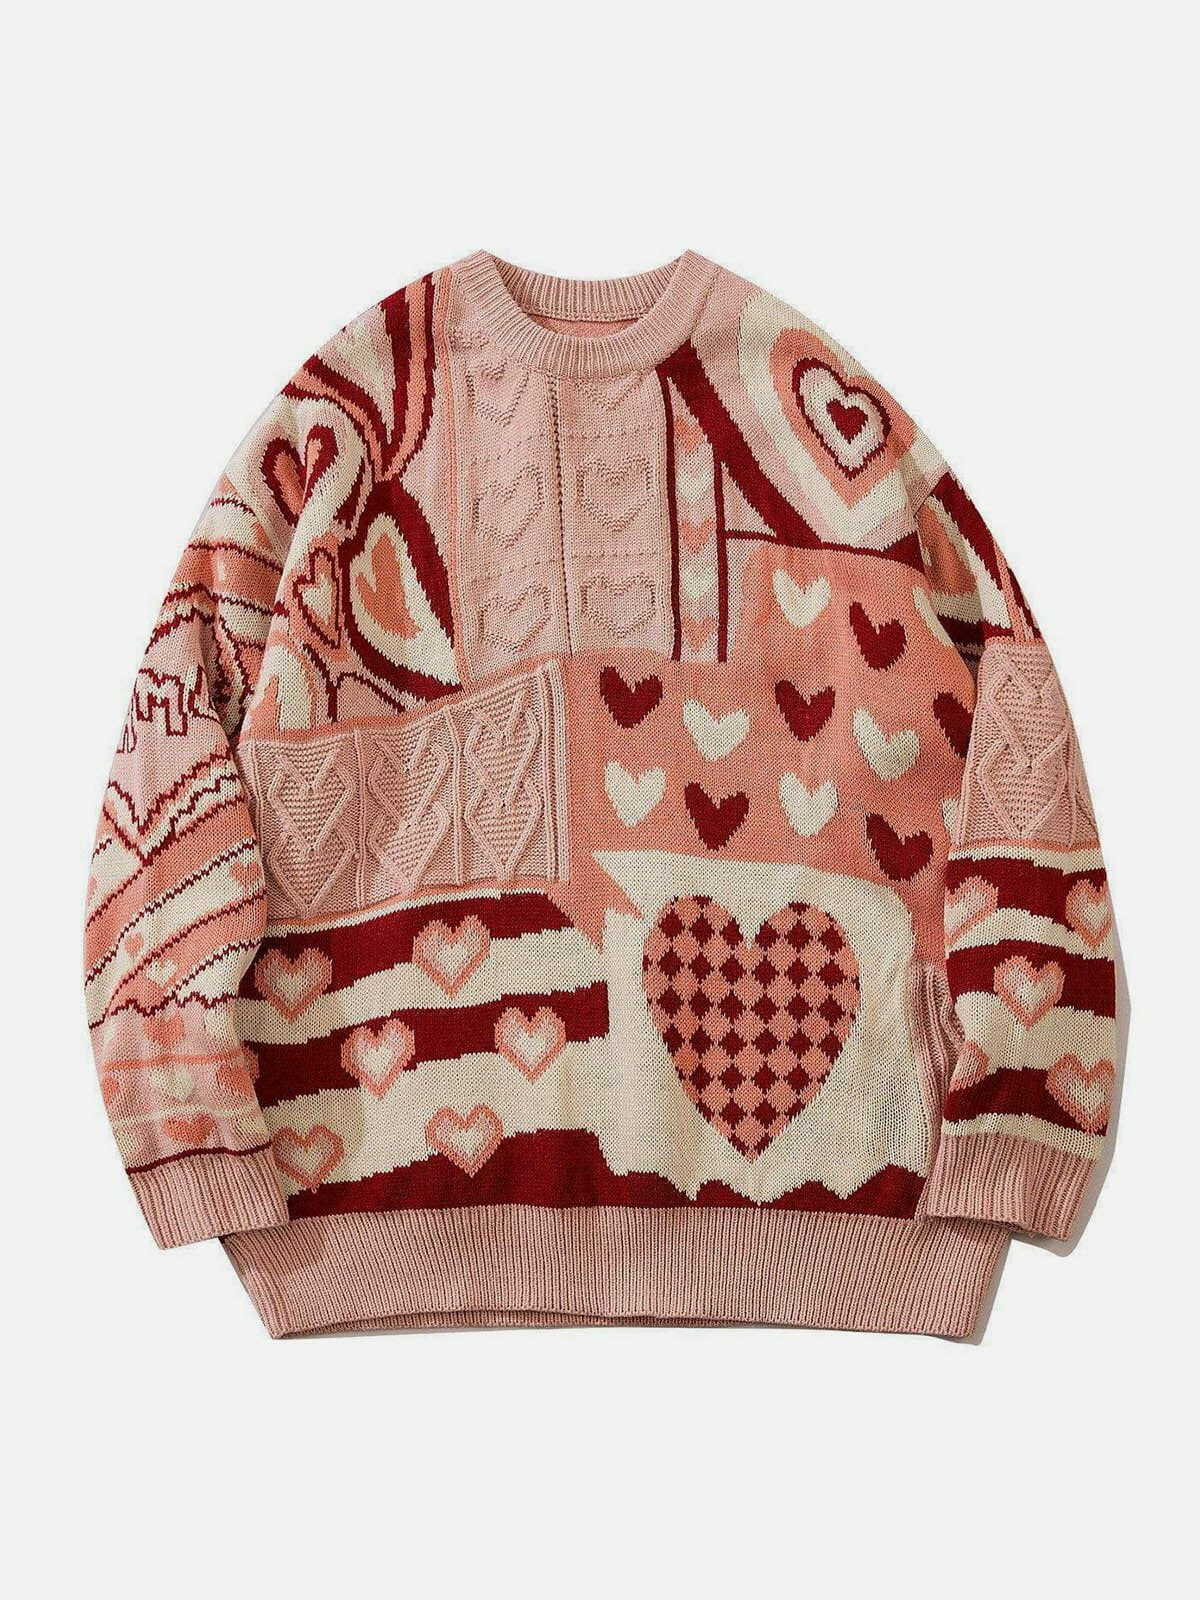 knit love sweater edgy y2k streetwear icon 1183